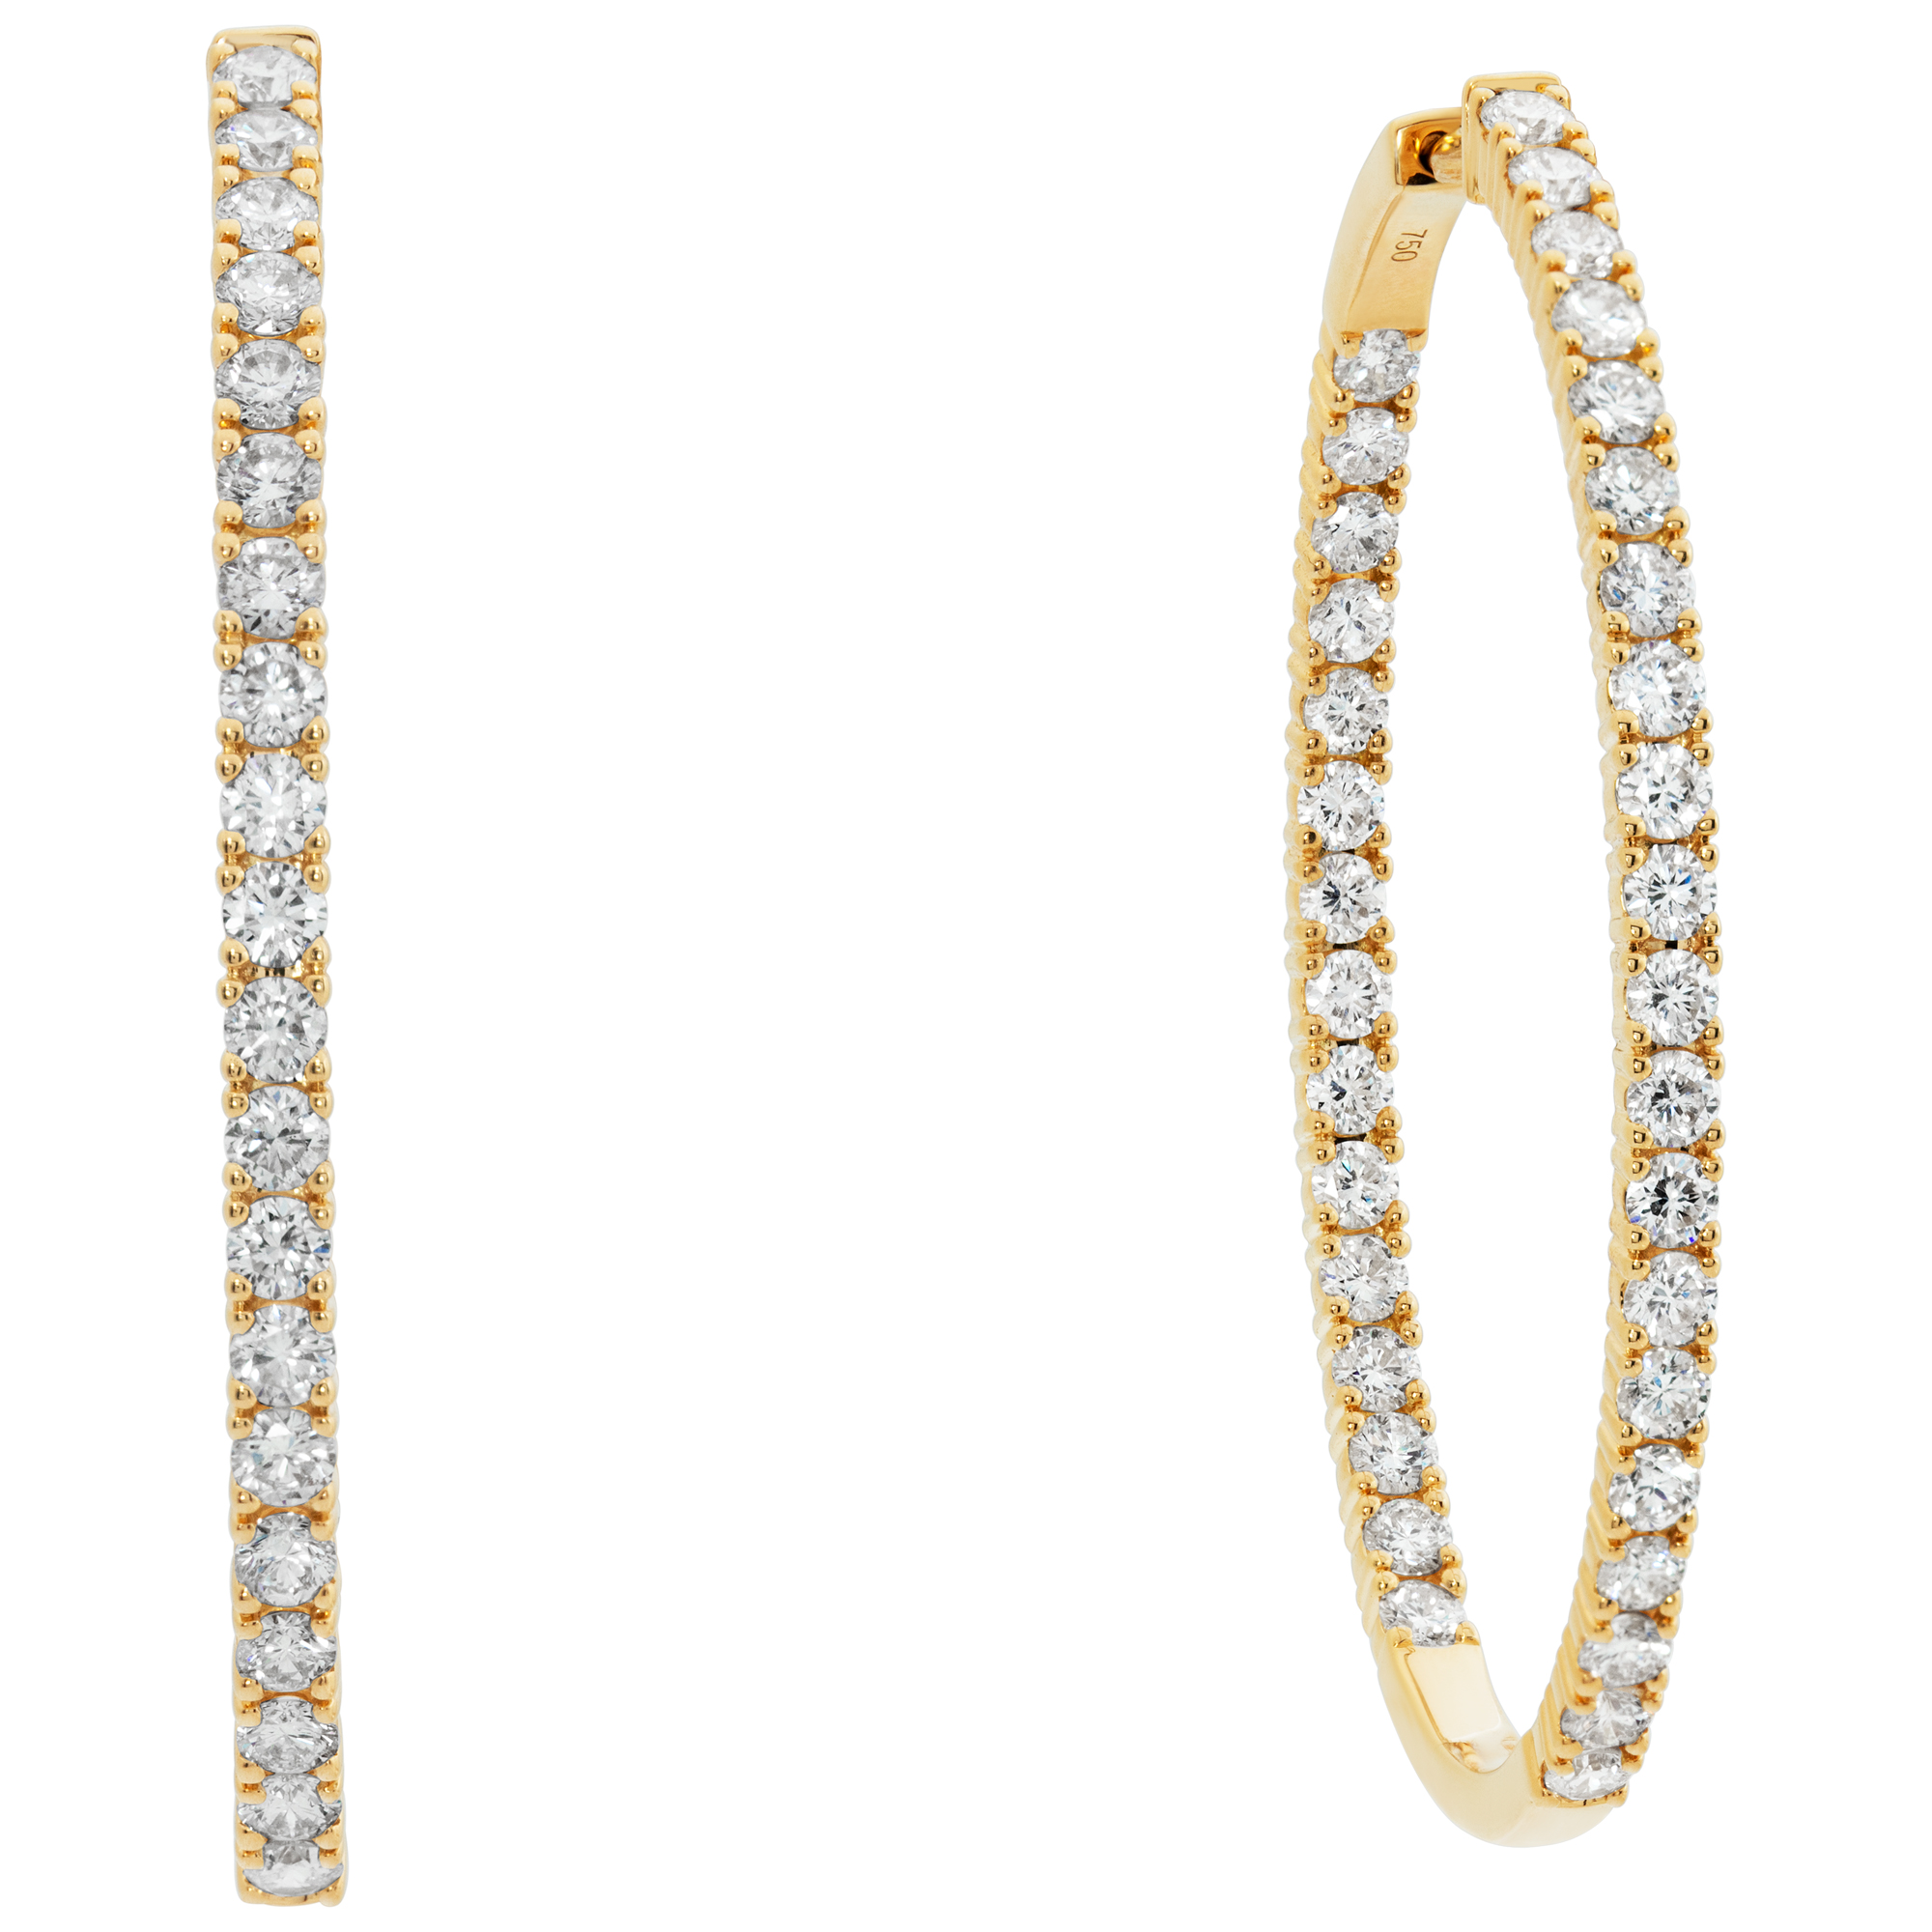 18k yellow gold inside-out oval hoop earrings w/ 4.92 cts in diamonds